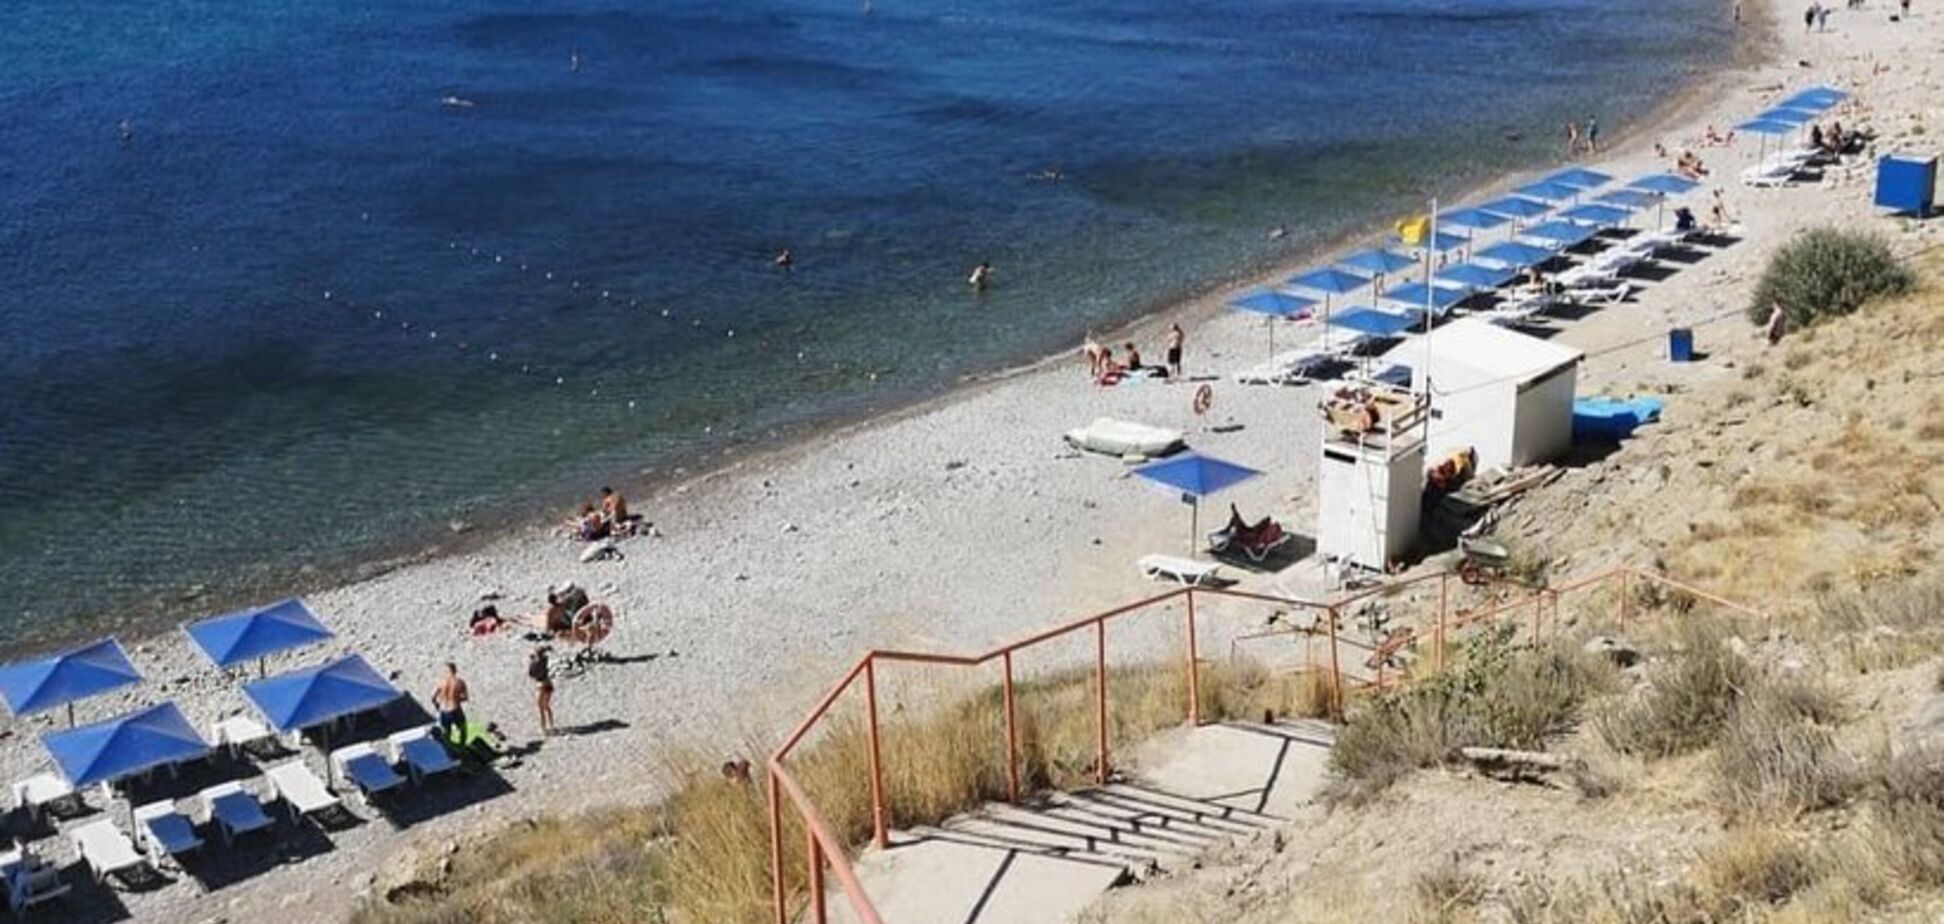 'Відмучилися!' З'явилися показові фото з курорту в анексованому Криму